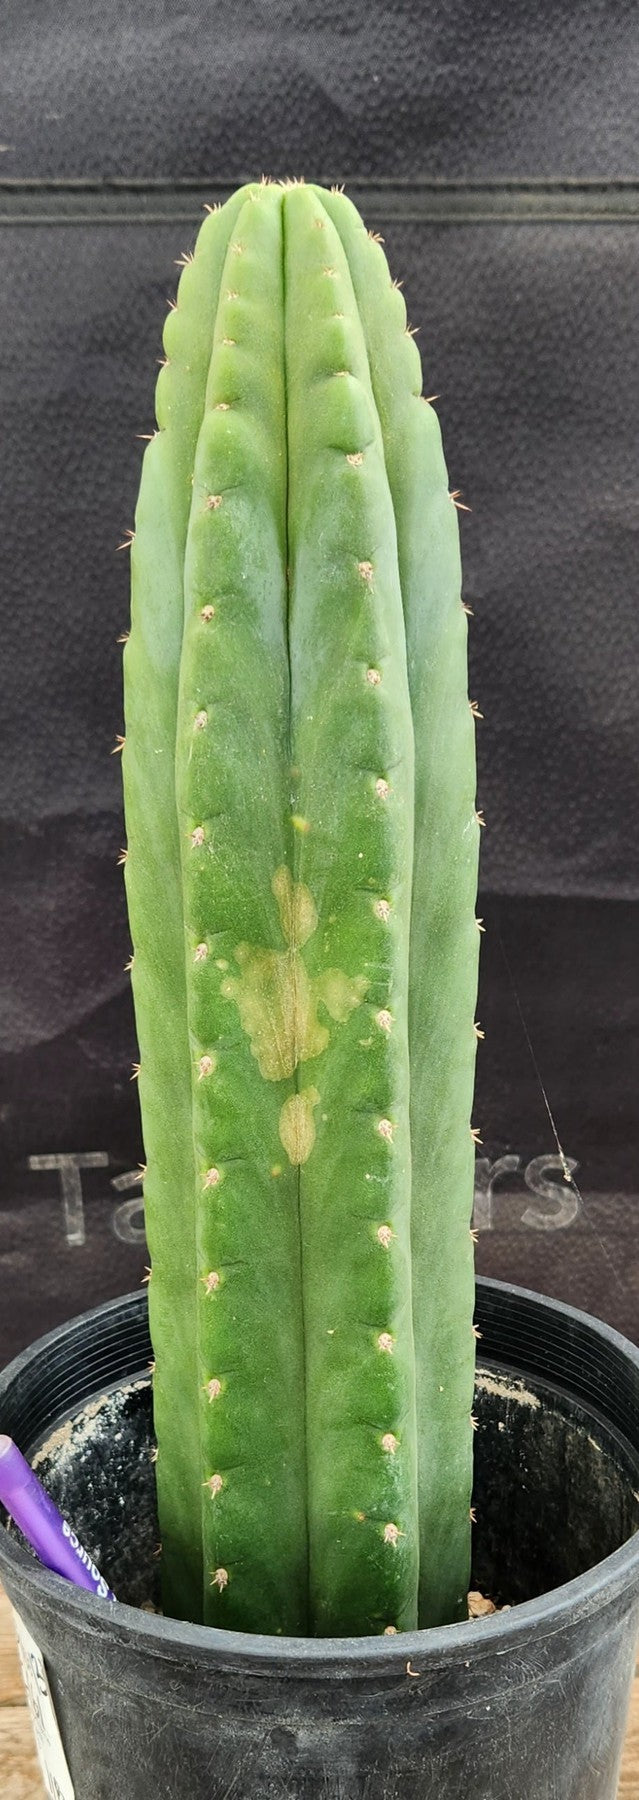 #EC161 EXACT Trichocereus Pachanoi "Awful" Cactus 16”-Cactus - Large - Exact-The Succulent Source